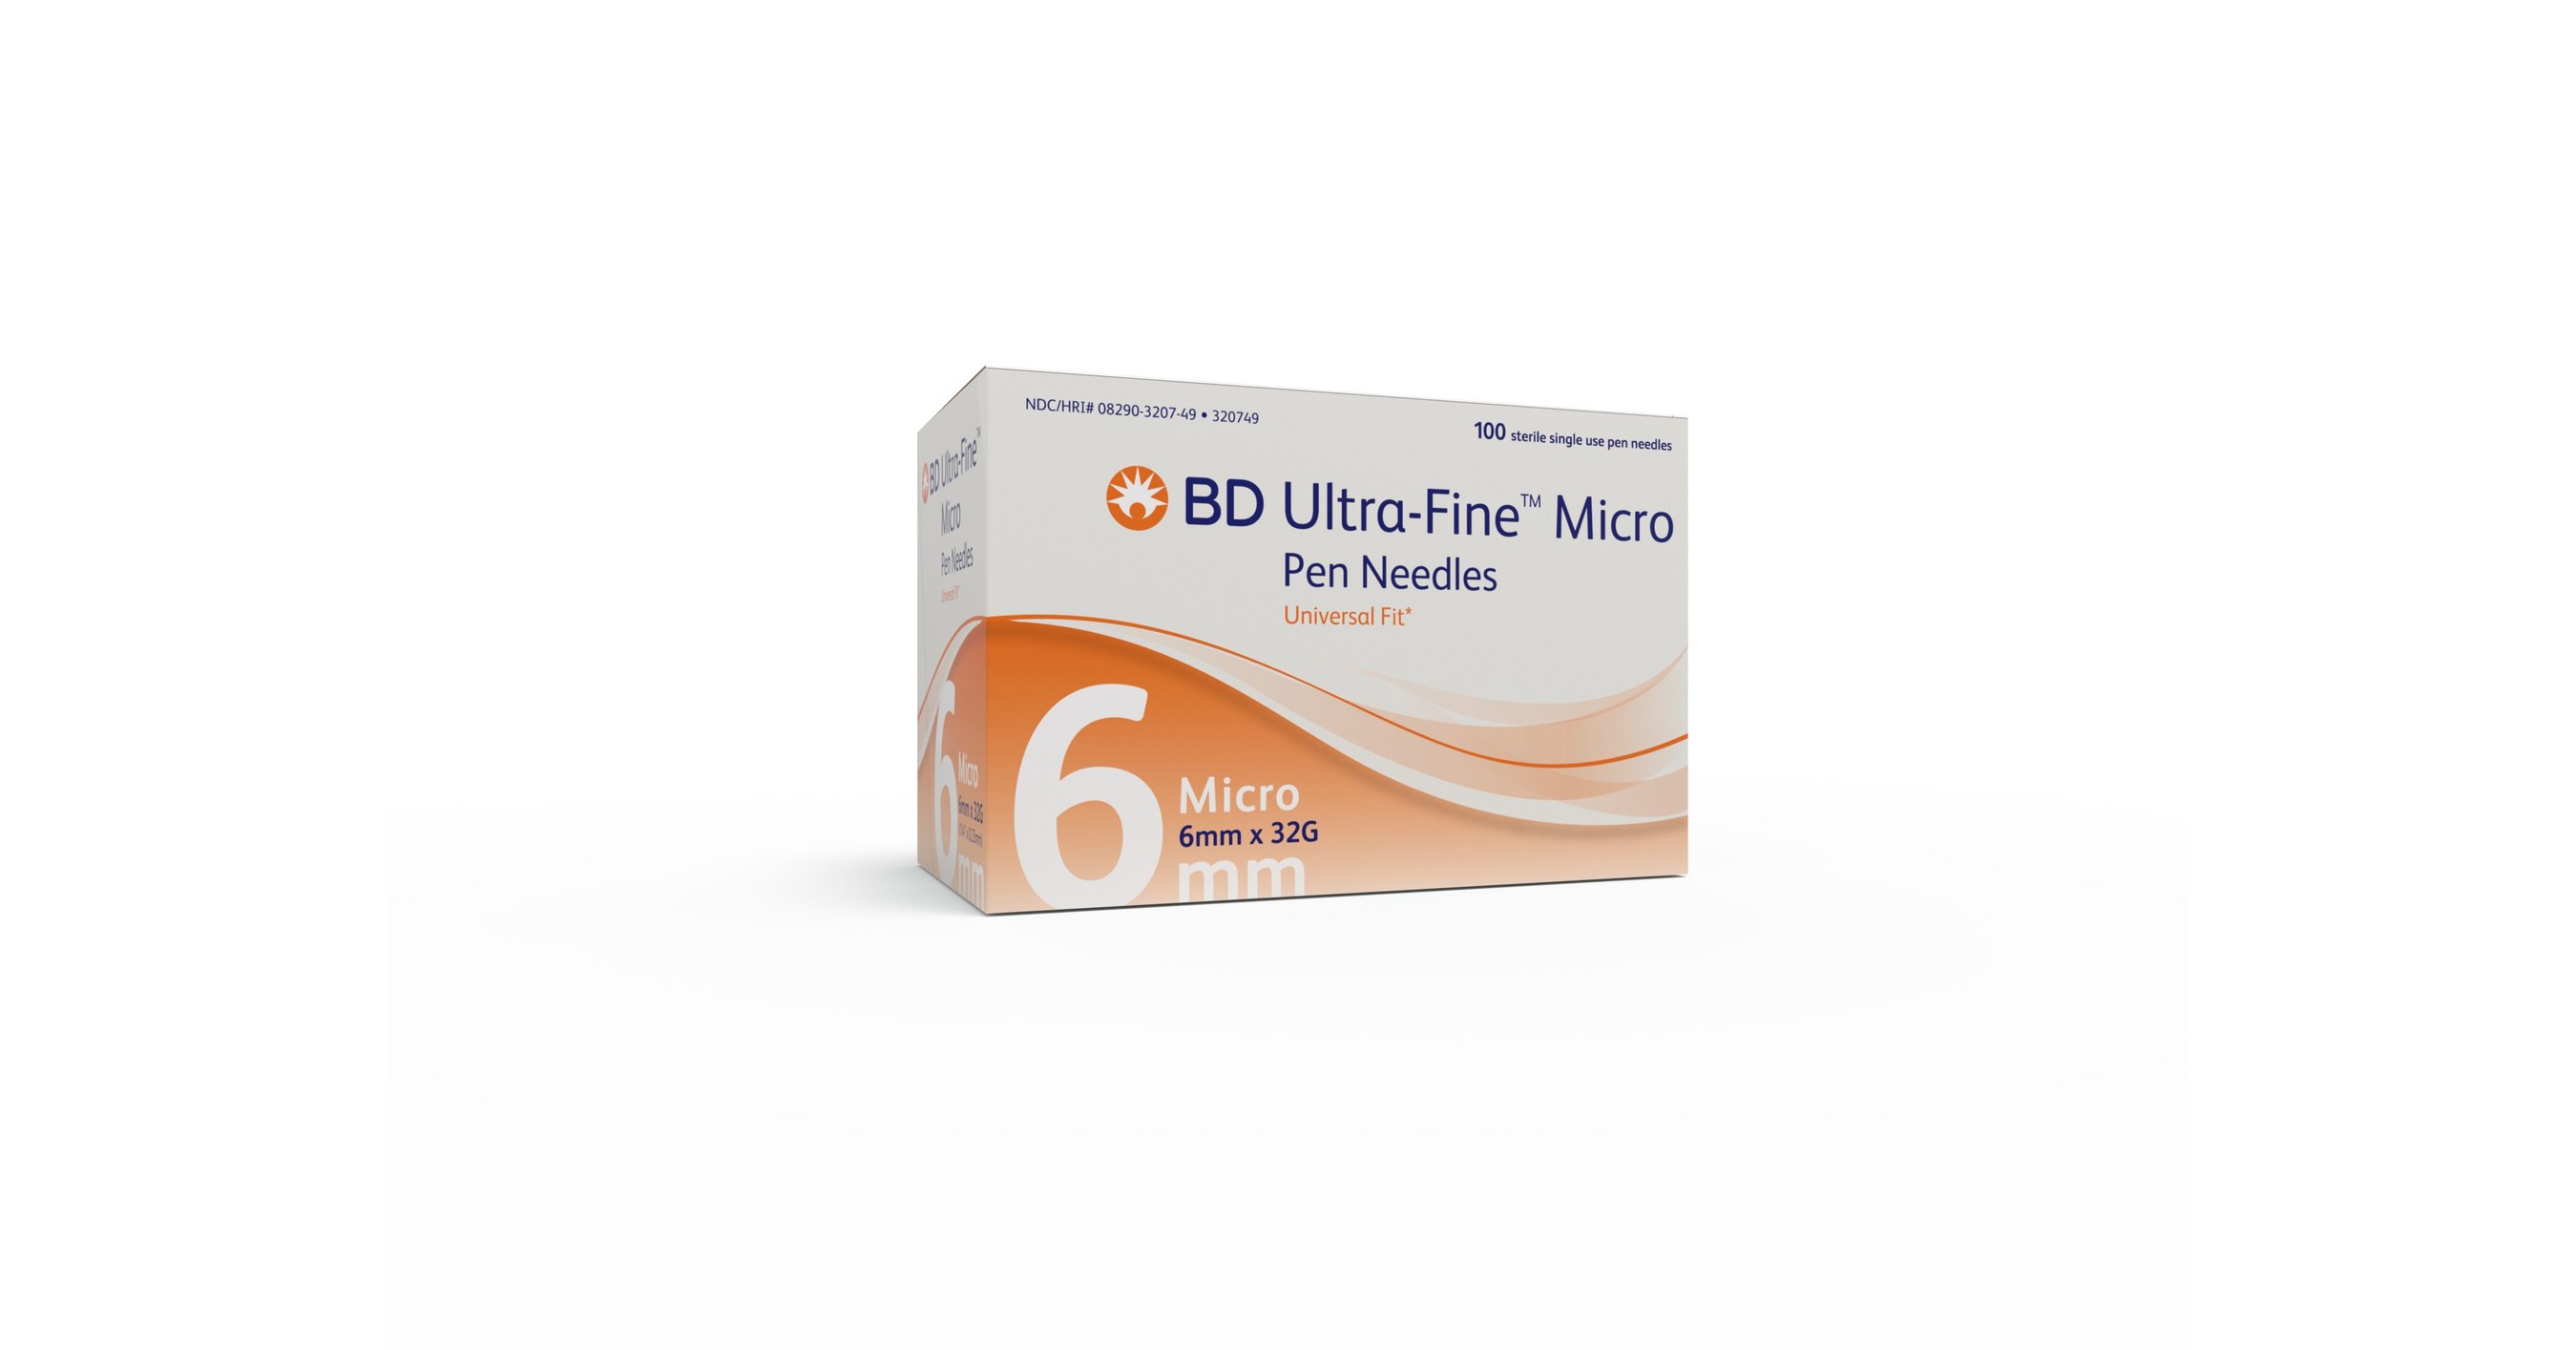  Medt - Fine Insulin Pen Needles (32G 5mm) - Diabetic